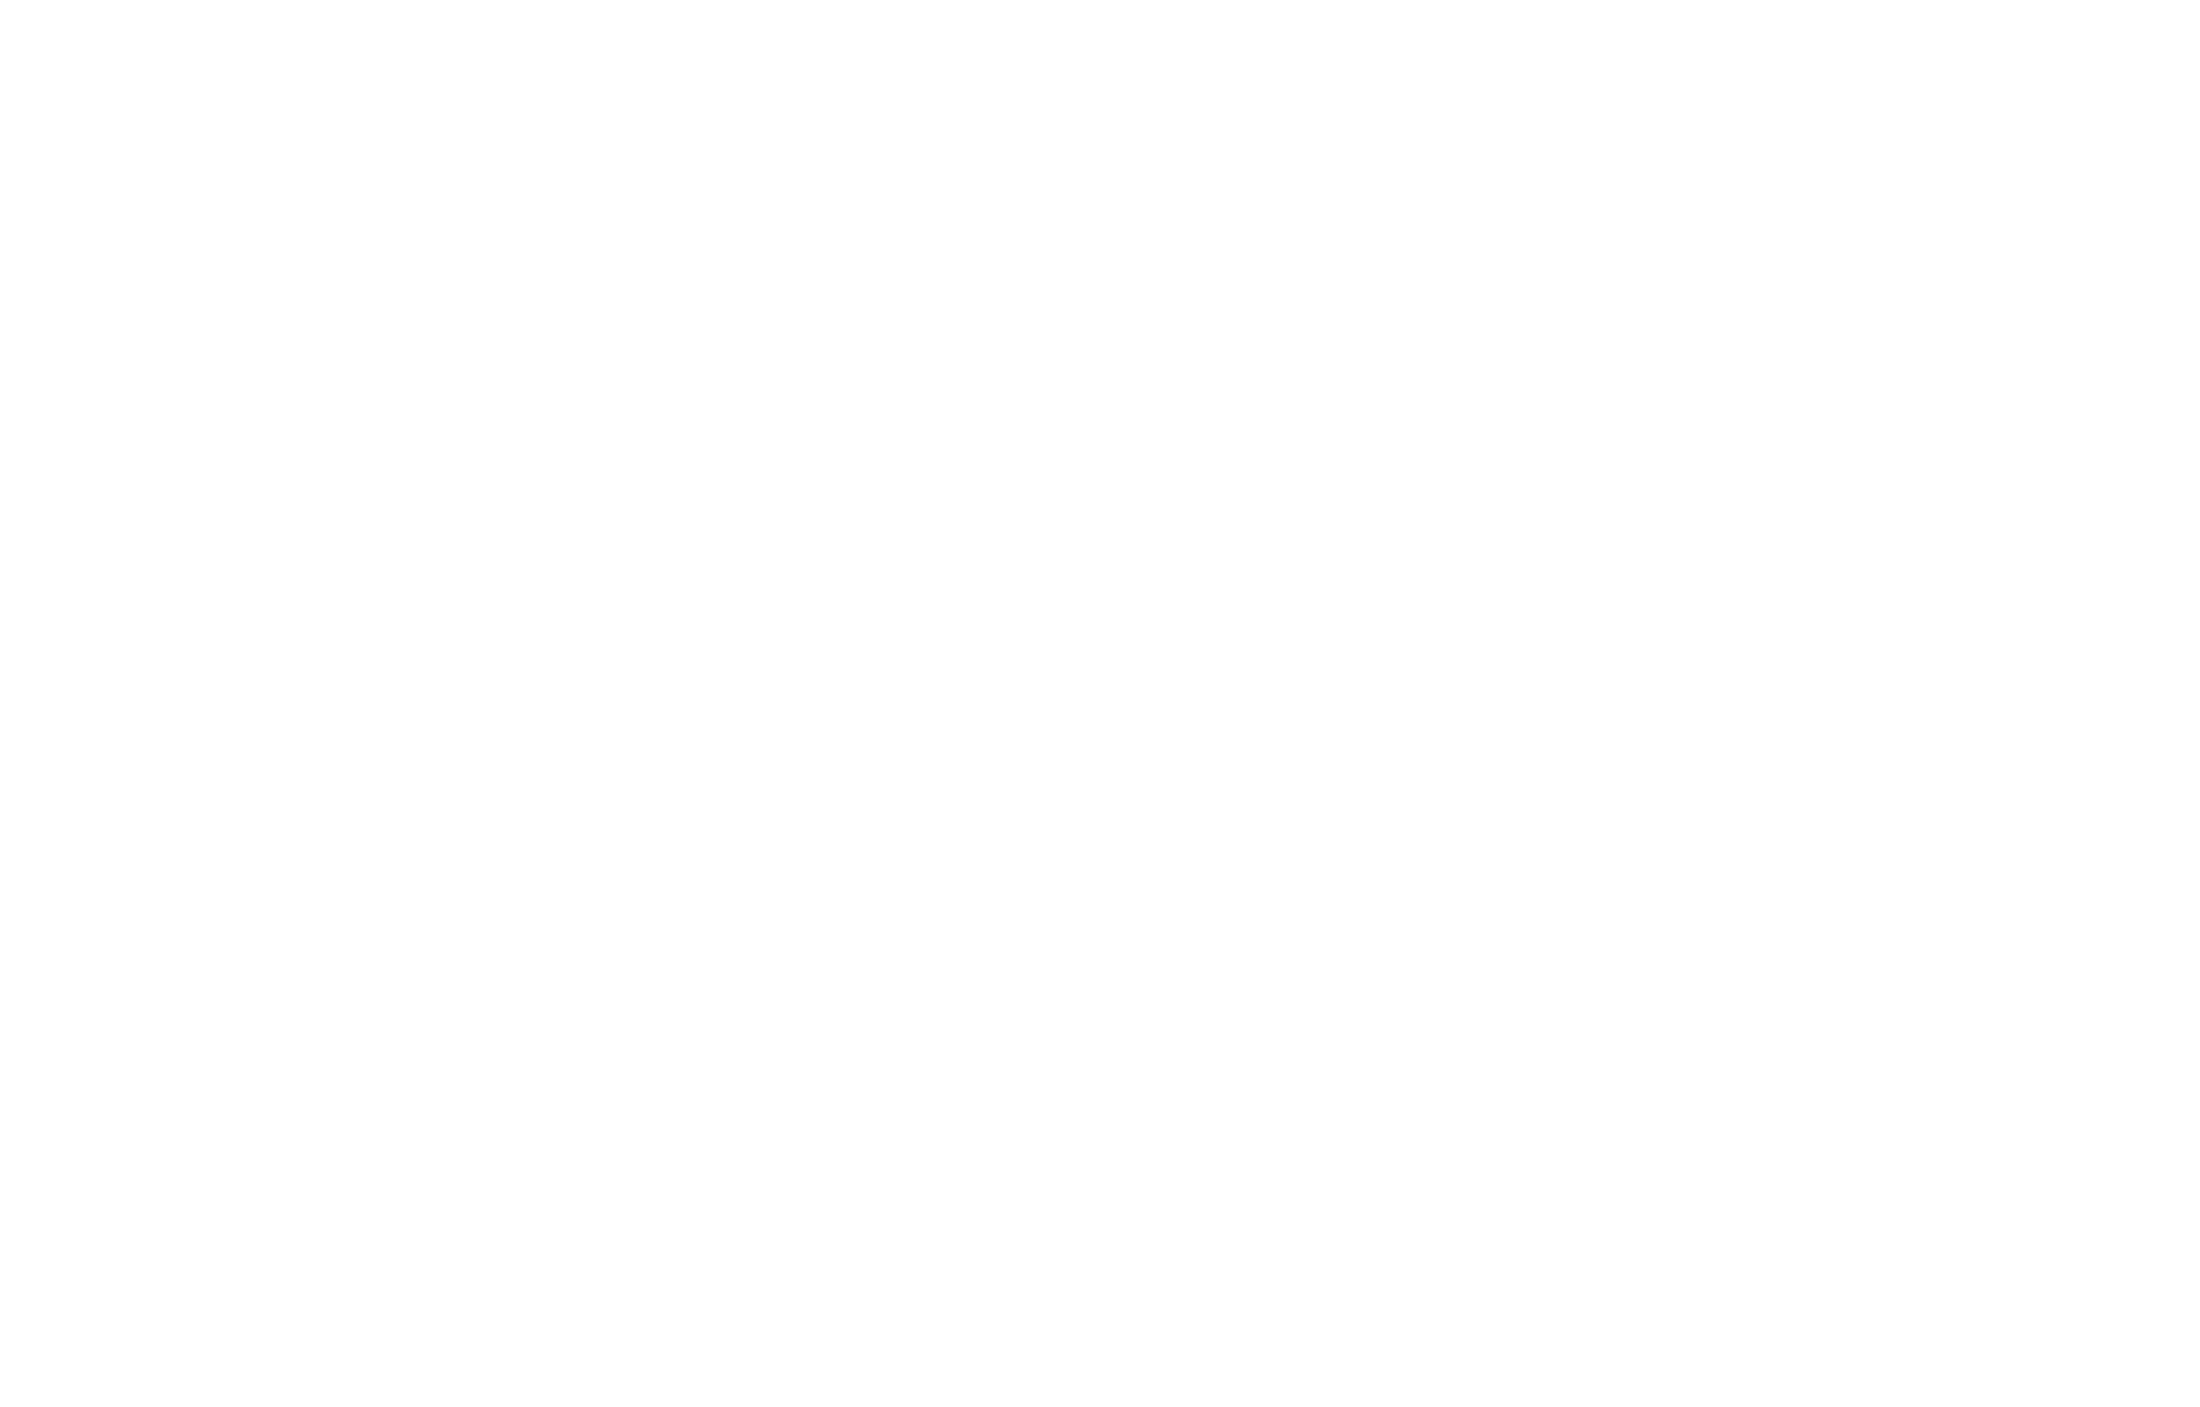 Portugal Vilela - Direito de Negócios